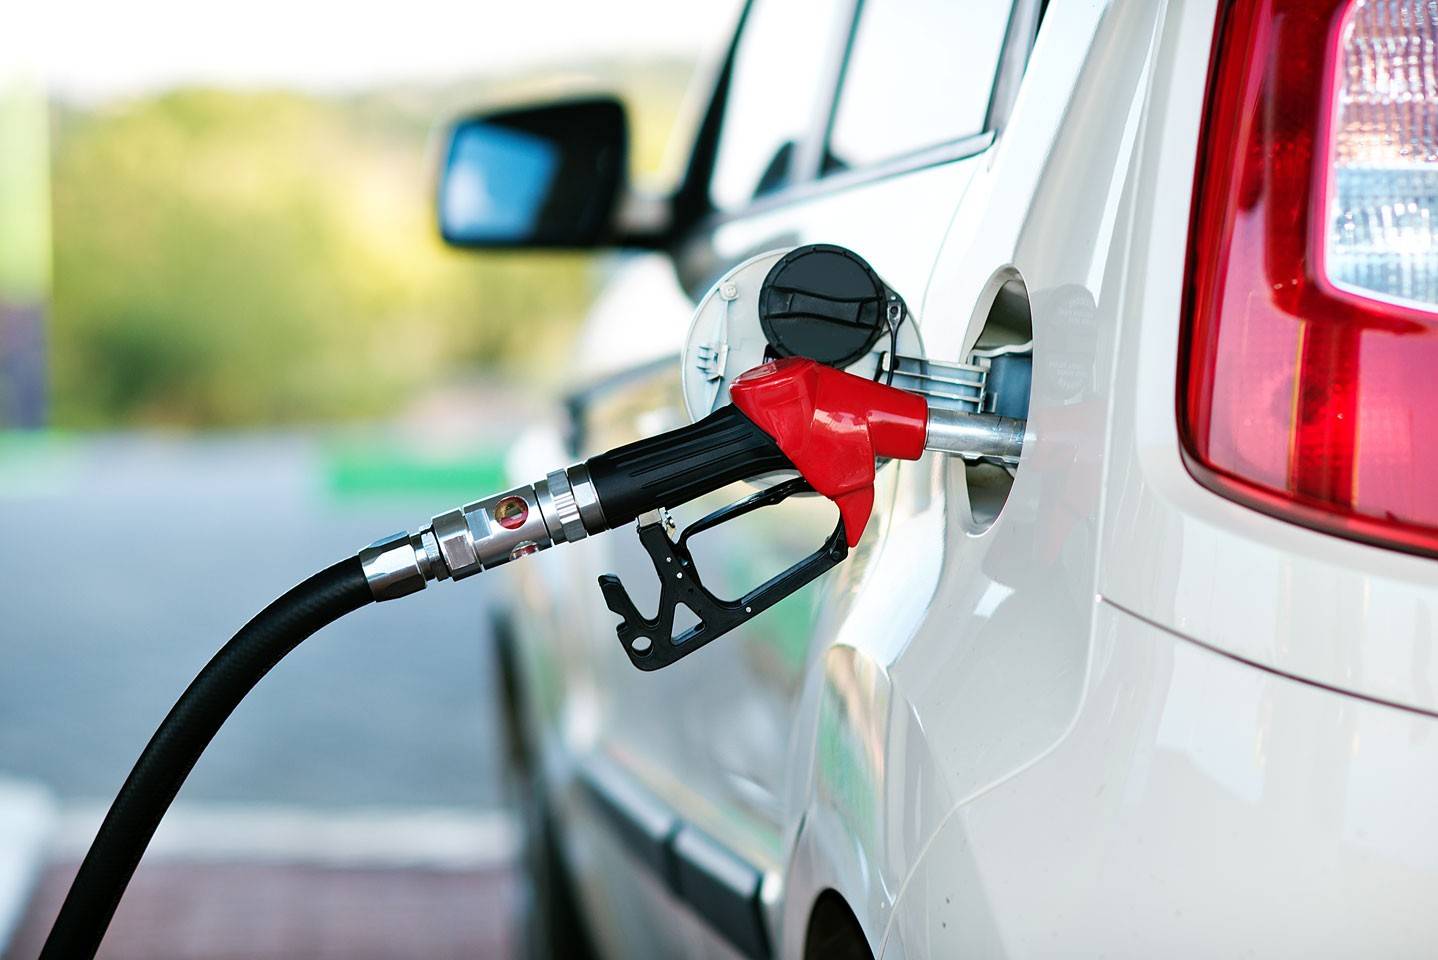 Газ, бензин или дизель – подбираем наиболее экономичное авто, ориентируясь на тип топлива